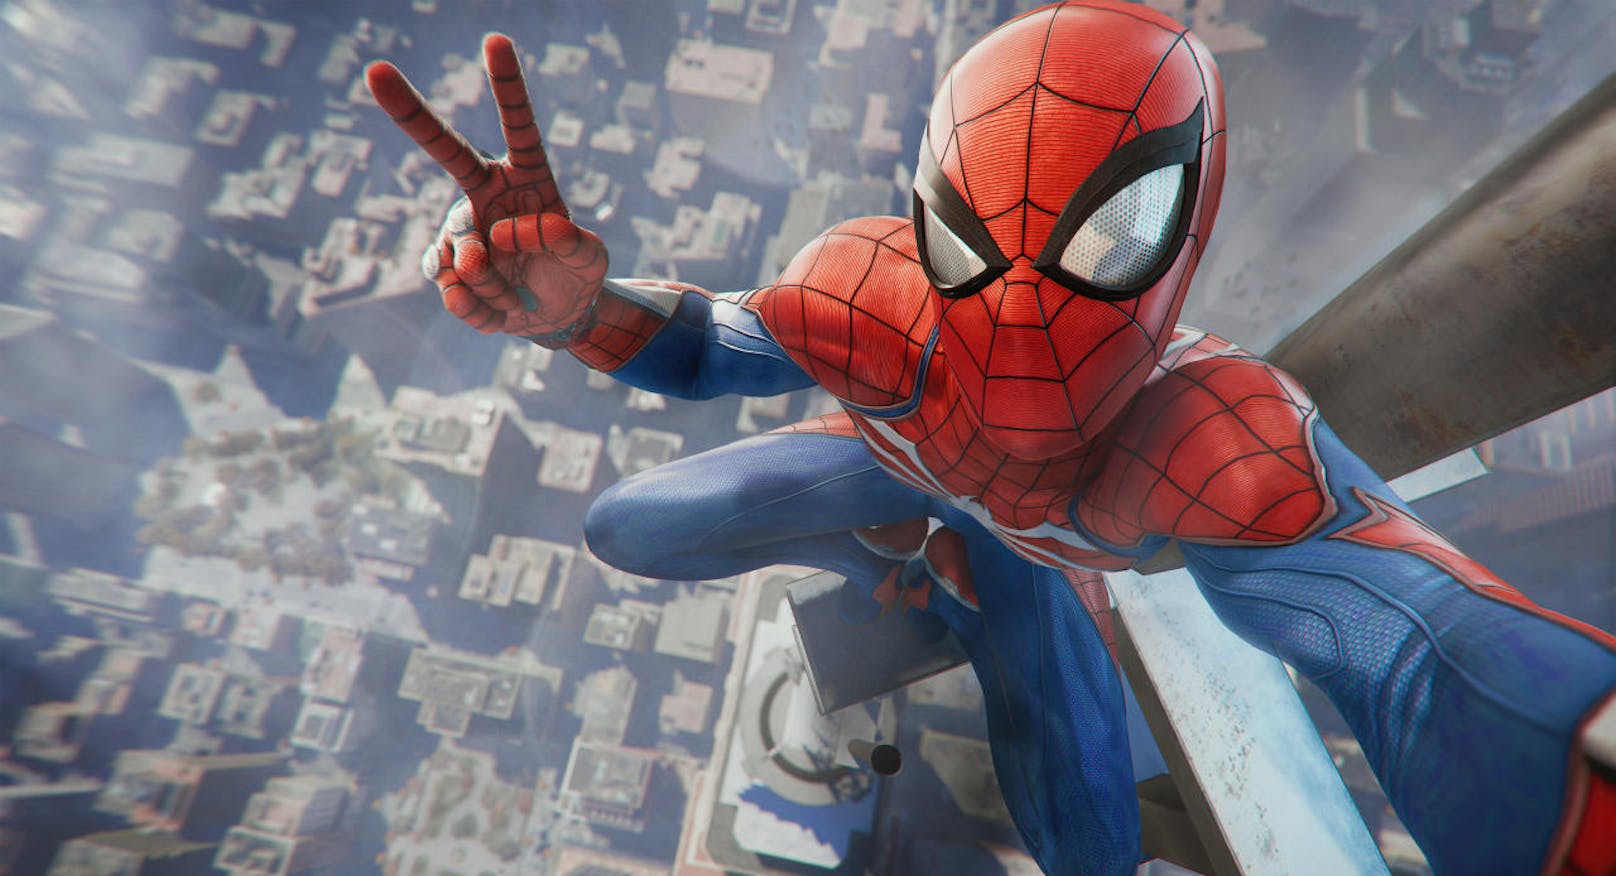 Als Spider-Man durch Häuserschluchten schwingen? Bei Action kann kaum ein Konkurrent die PlayStation überbieten.